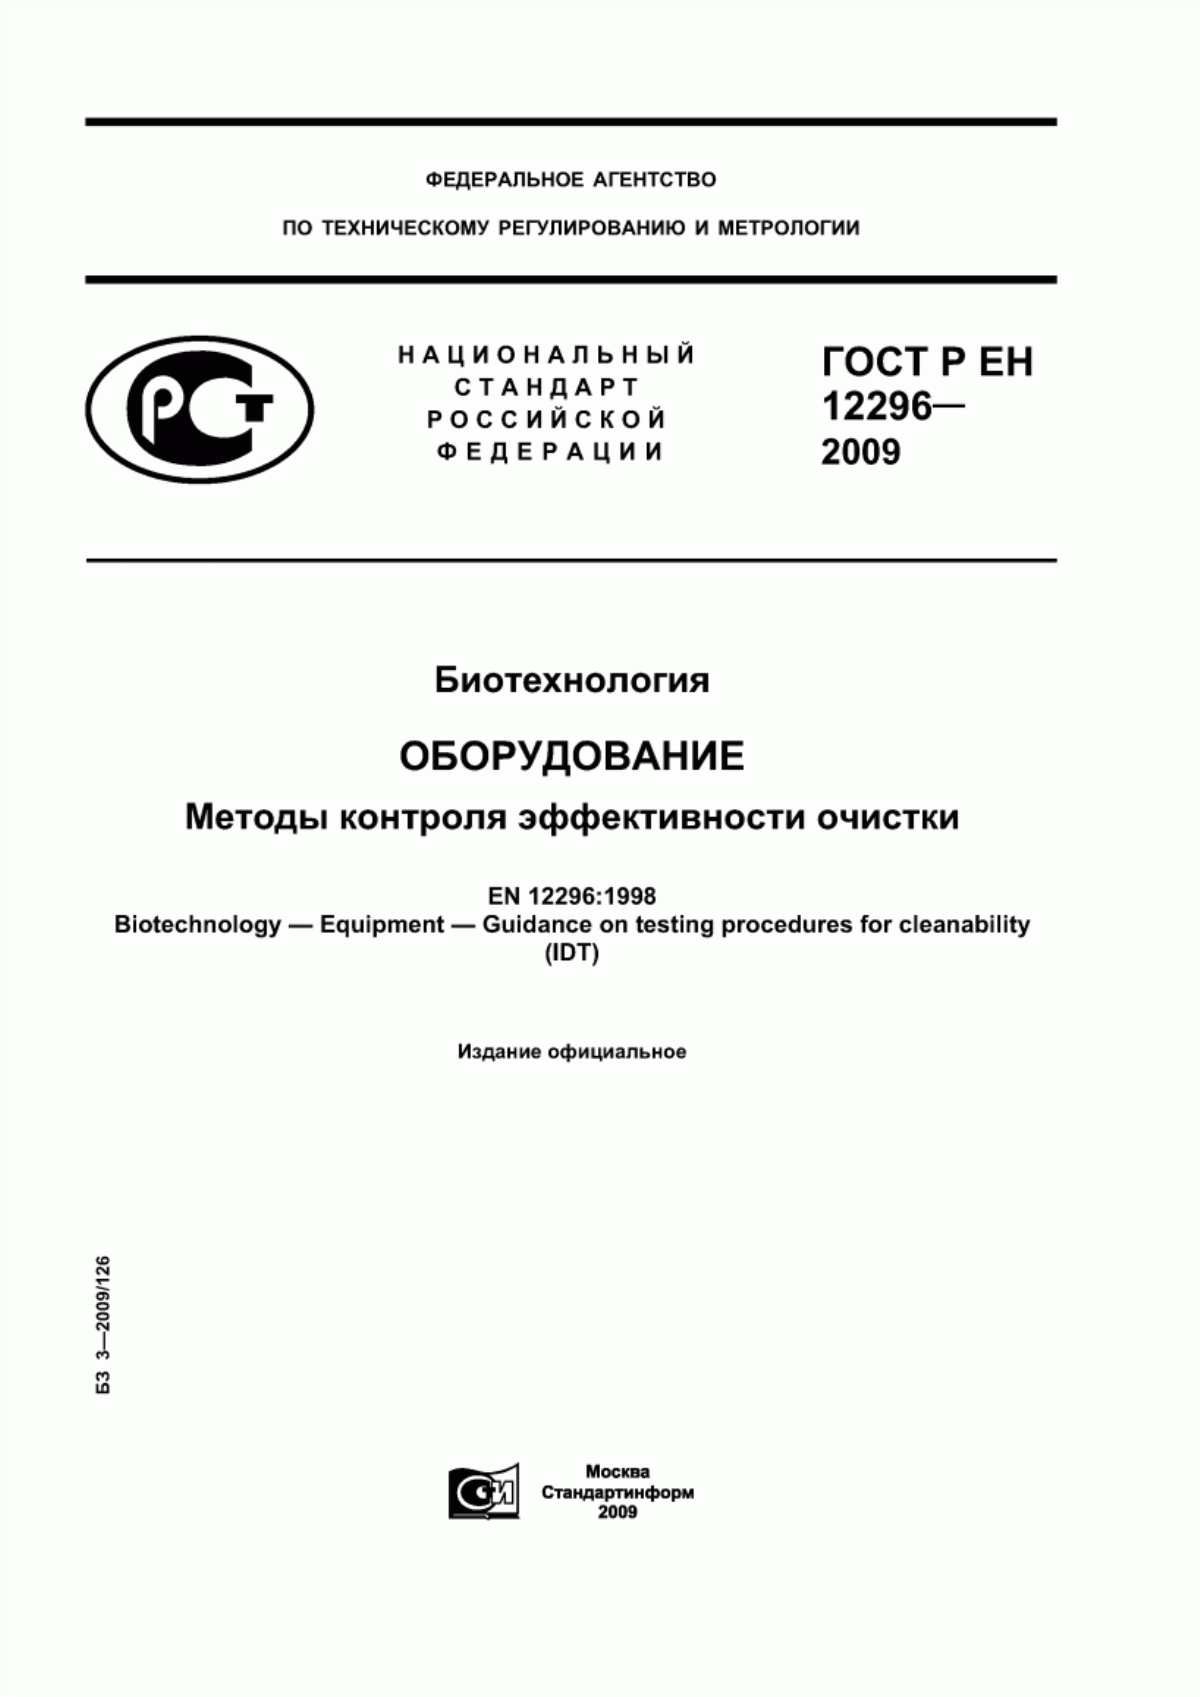 ГОСТ Р ЕН 12296-2009 Биотехнология. Оборудование. Методы контроля эффективности очистки